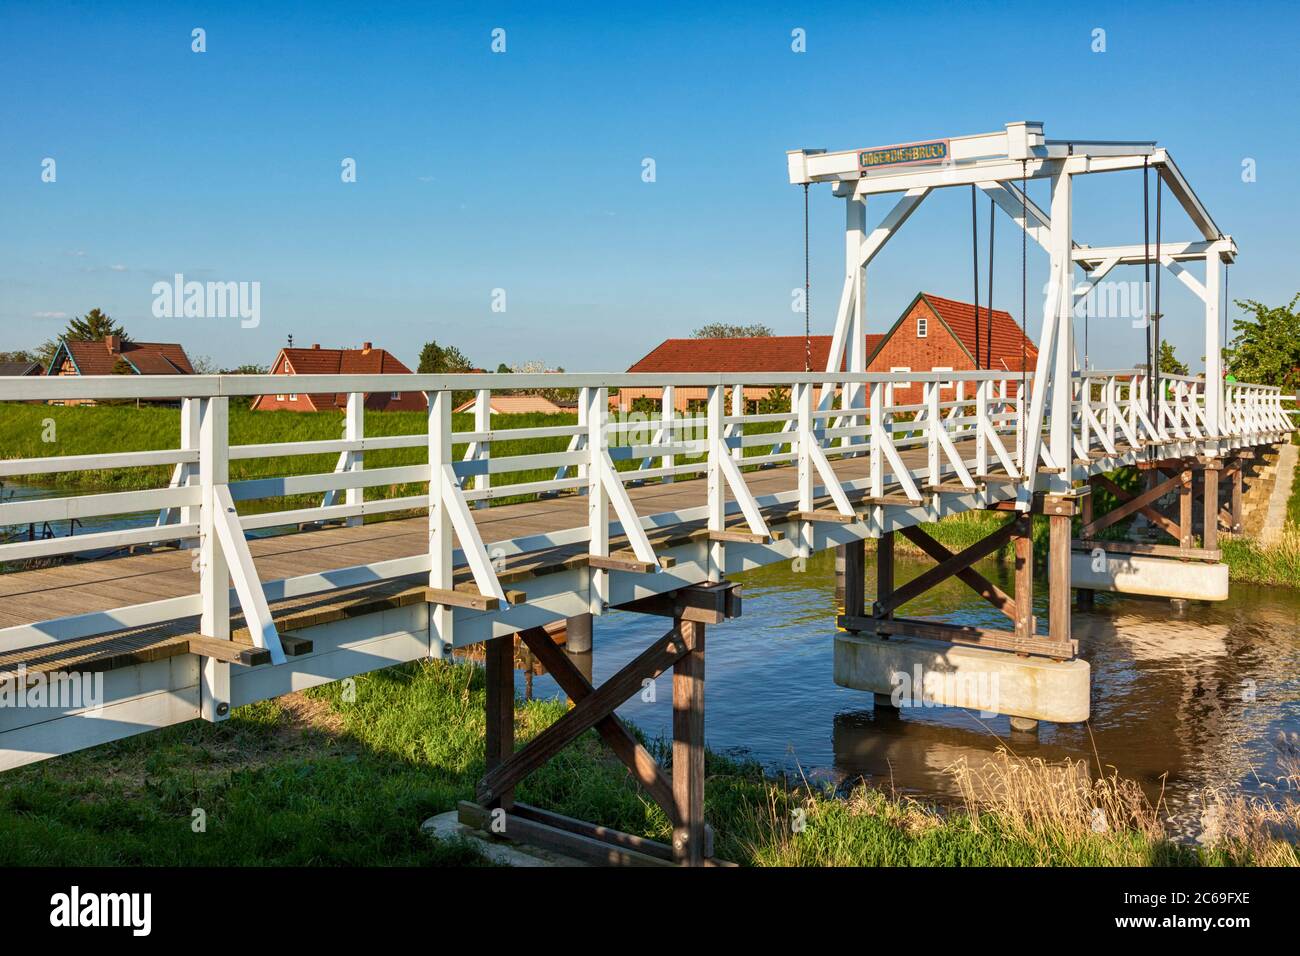 Hogendieckbrücke, pont de base traversant la rivière Lühe à Steinkirchen, région des Altes Land, Allemagne Banque D'Images